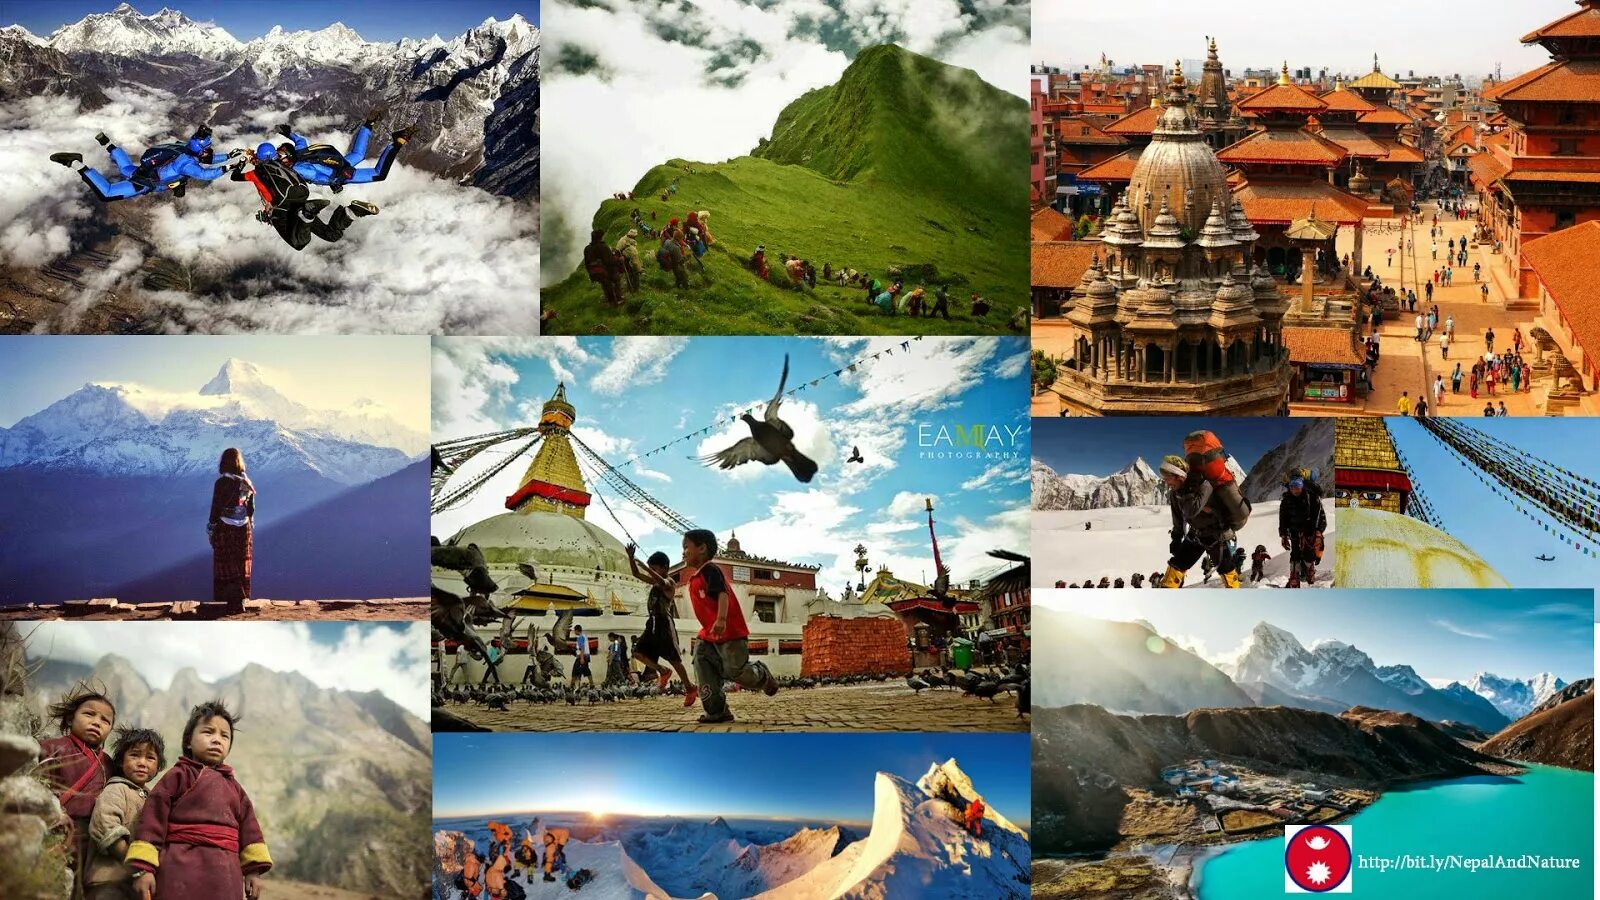 Непал туризм. Непал фотоколлаж. Коллаж туризм. Картины для туристов в Непале.